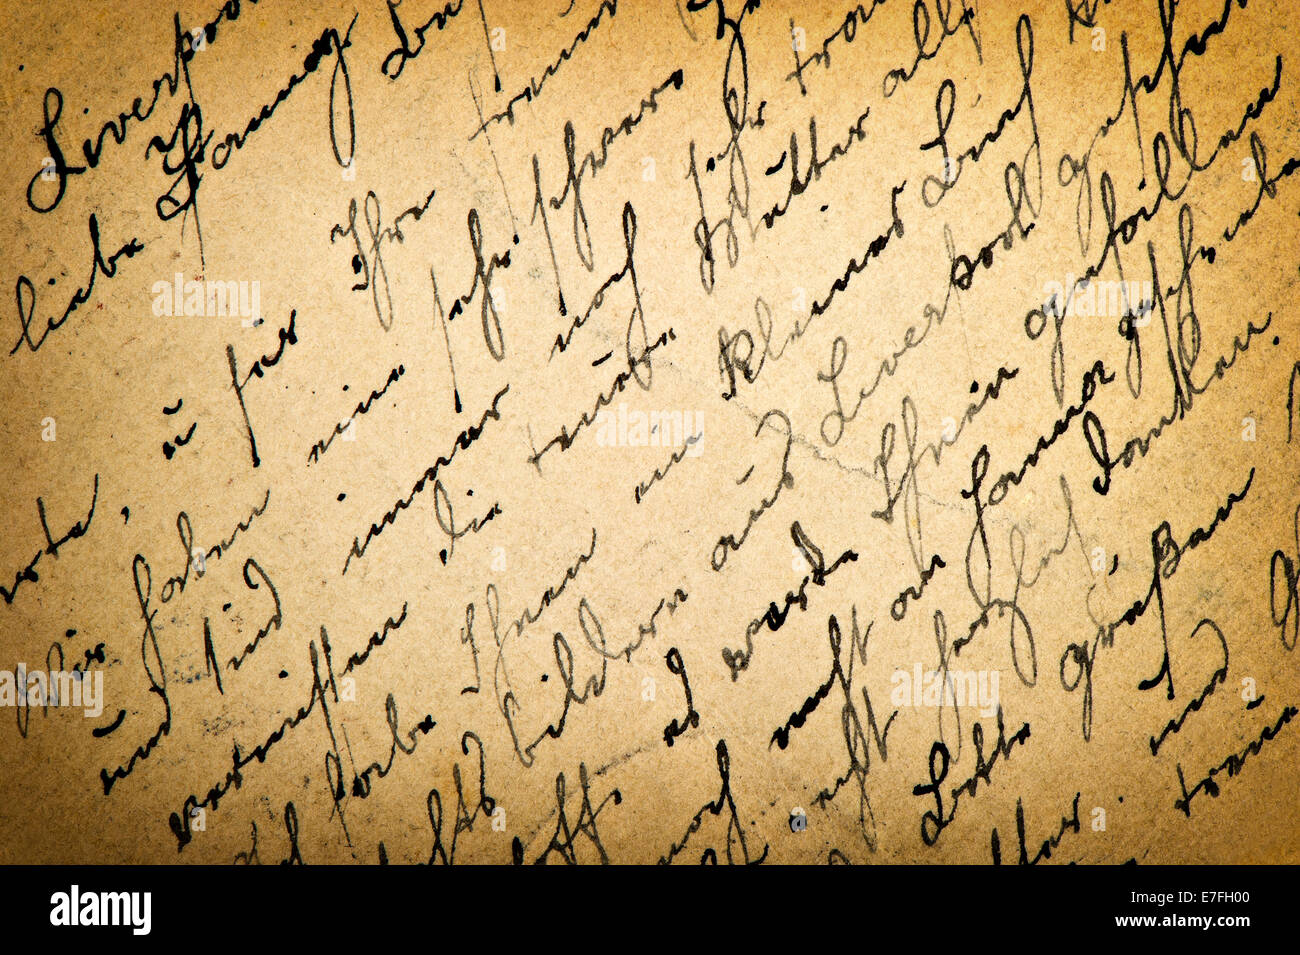 Lettre ancienne vintage avec l'écriture. Grunge background. Retro style tonique photo Banque D'Images